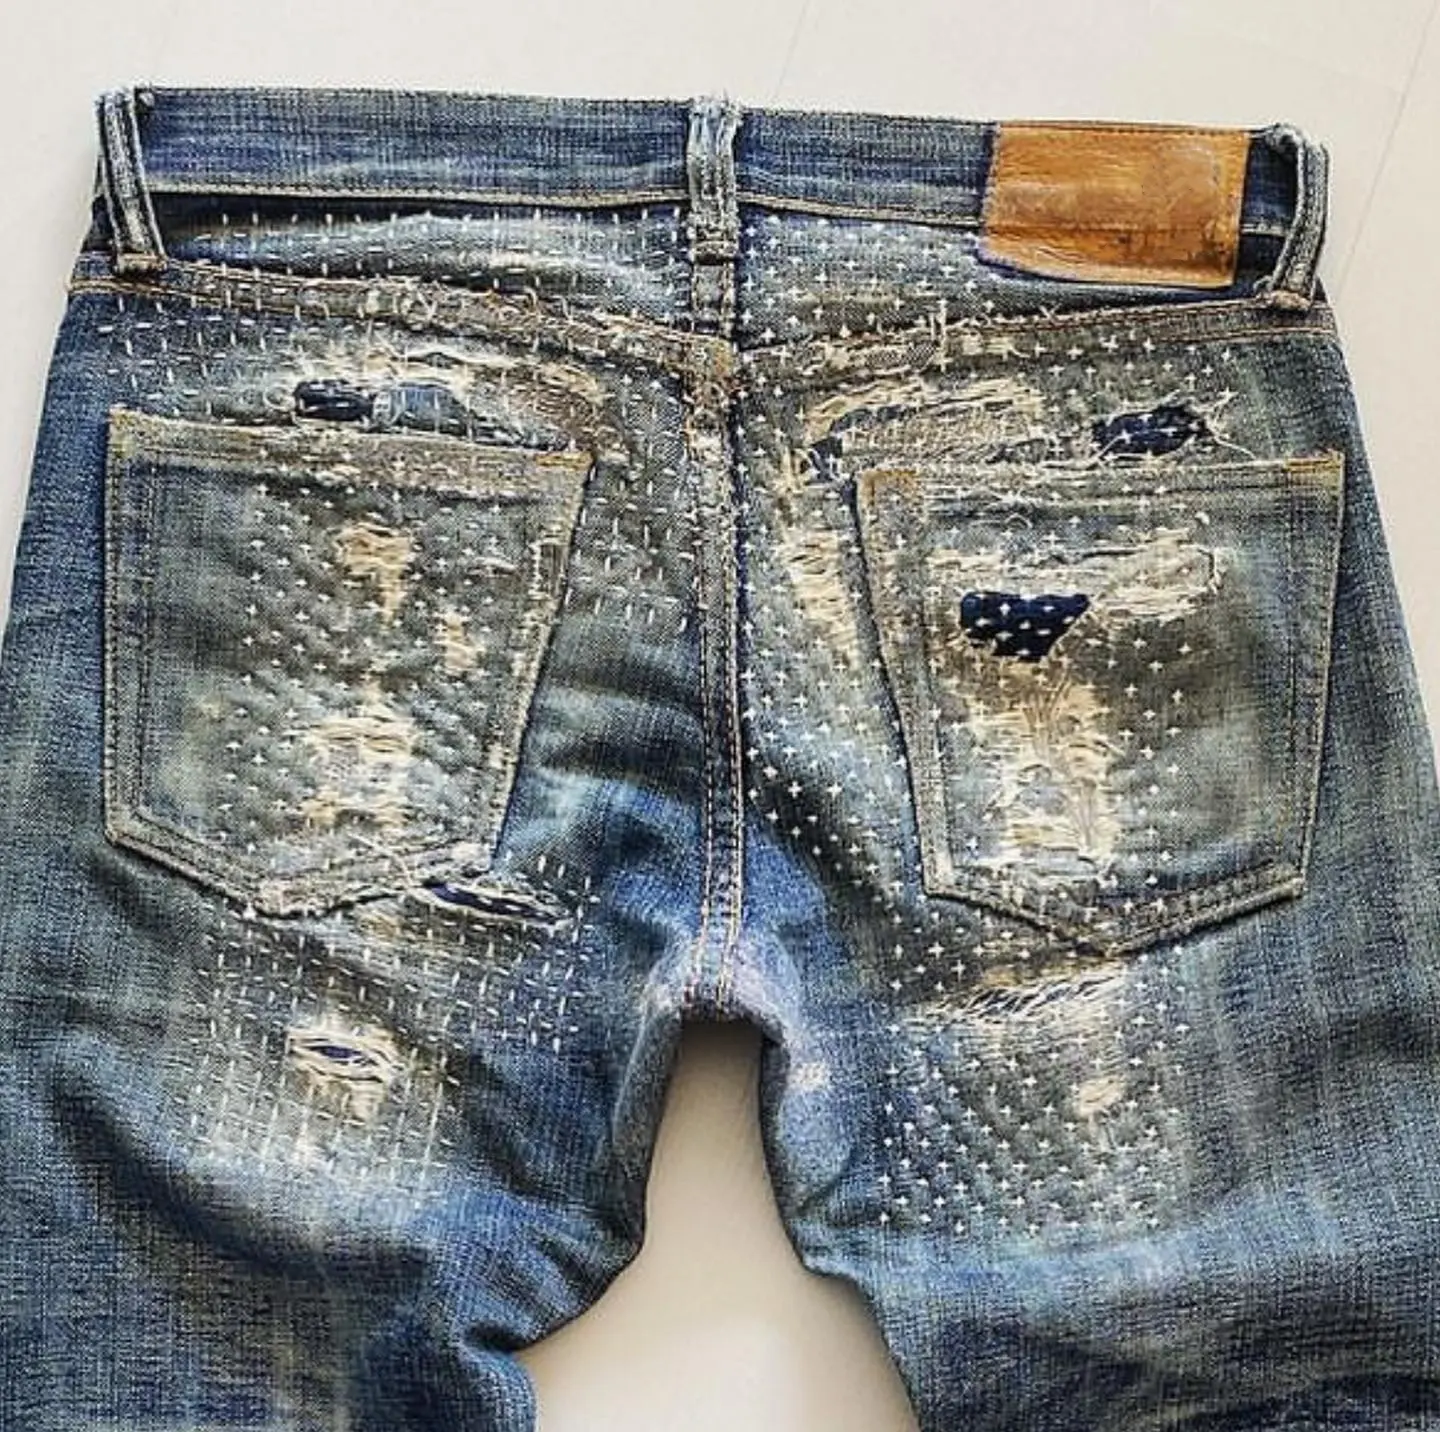 ملابس تشويانغ جينز جينز مدبب وممزق وممزق وممزق وممزق على بعضه بأزرار ومخدوش جينز أزرق لرجال الدراجات